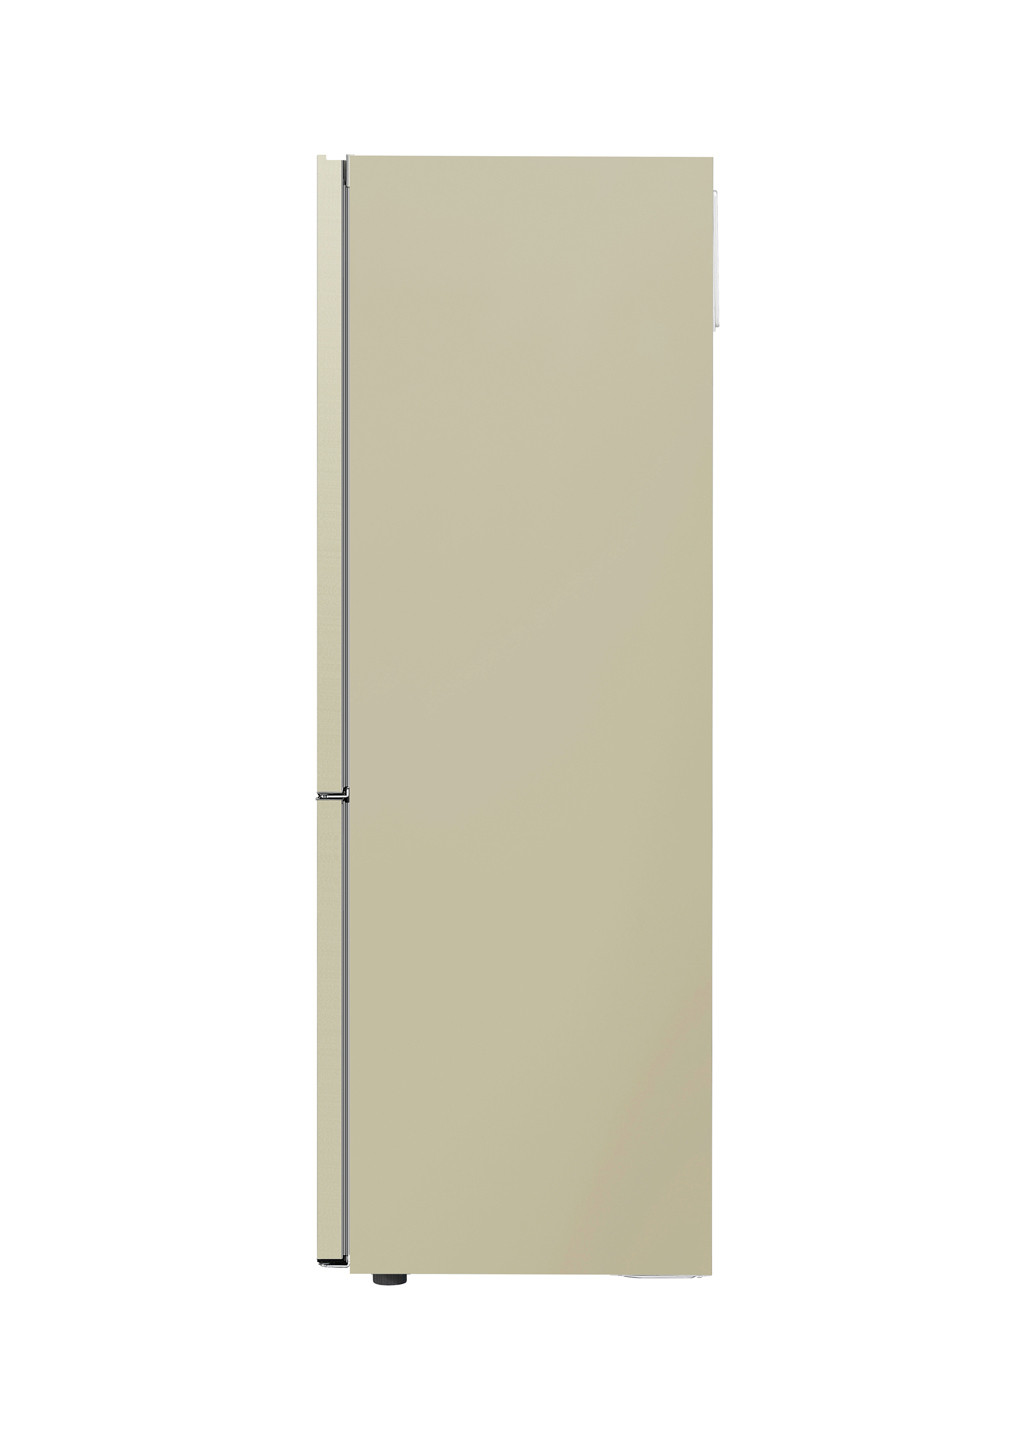 Холодильник комби LG GA-B459SECM